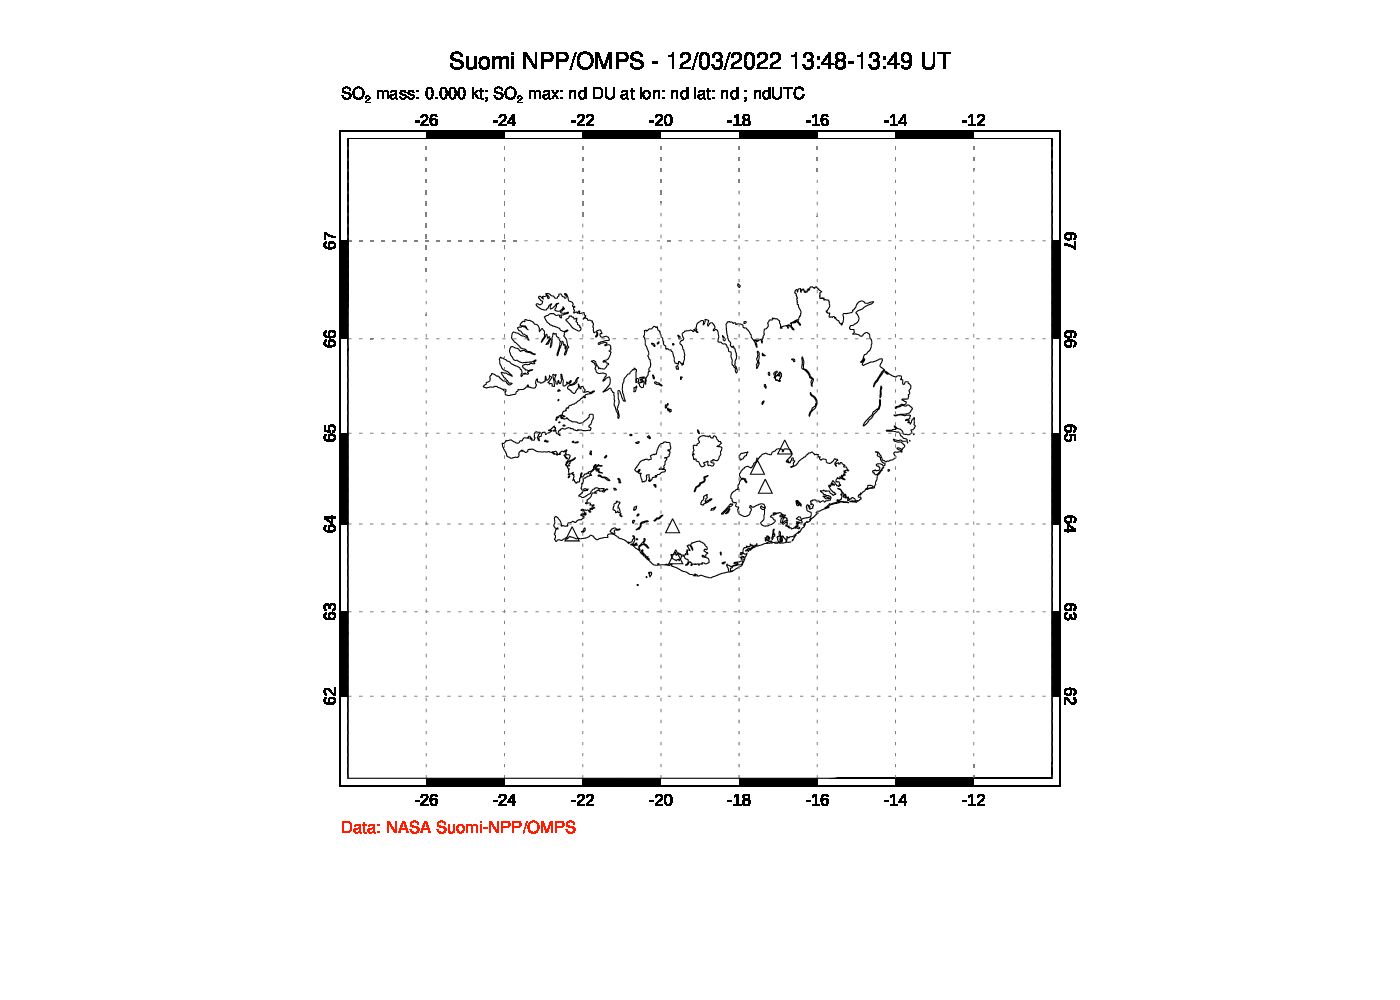 A sulfur dioxide image over Iceland on Dec 03, 2022.